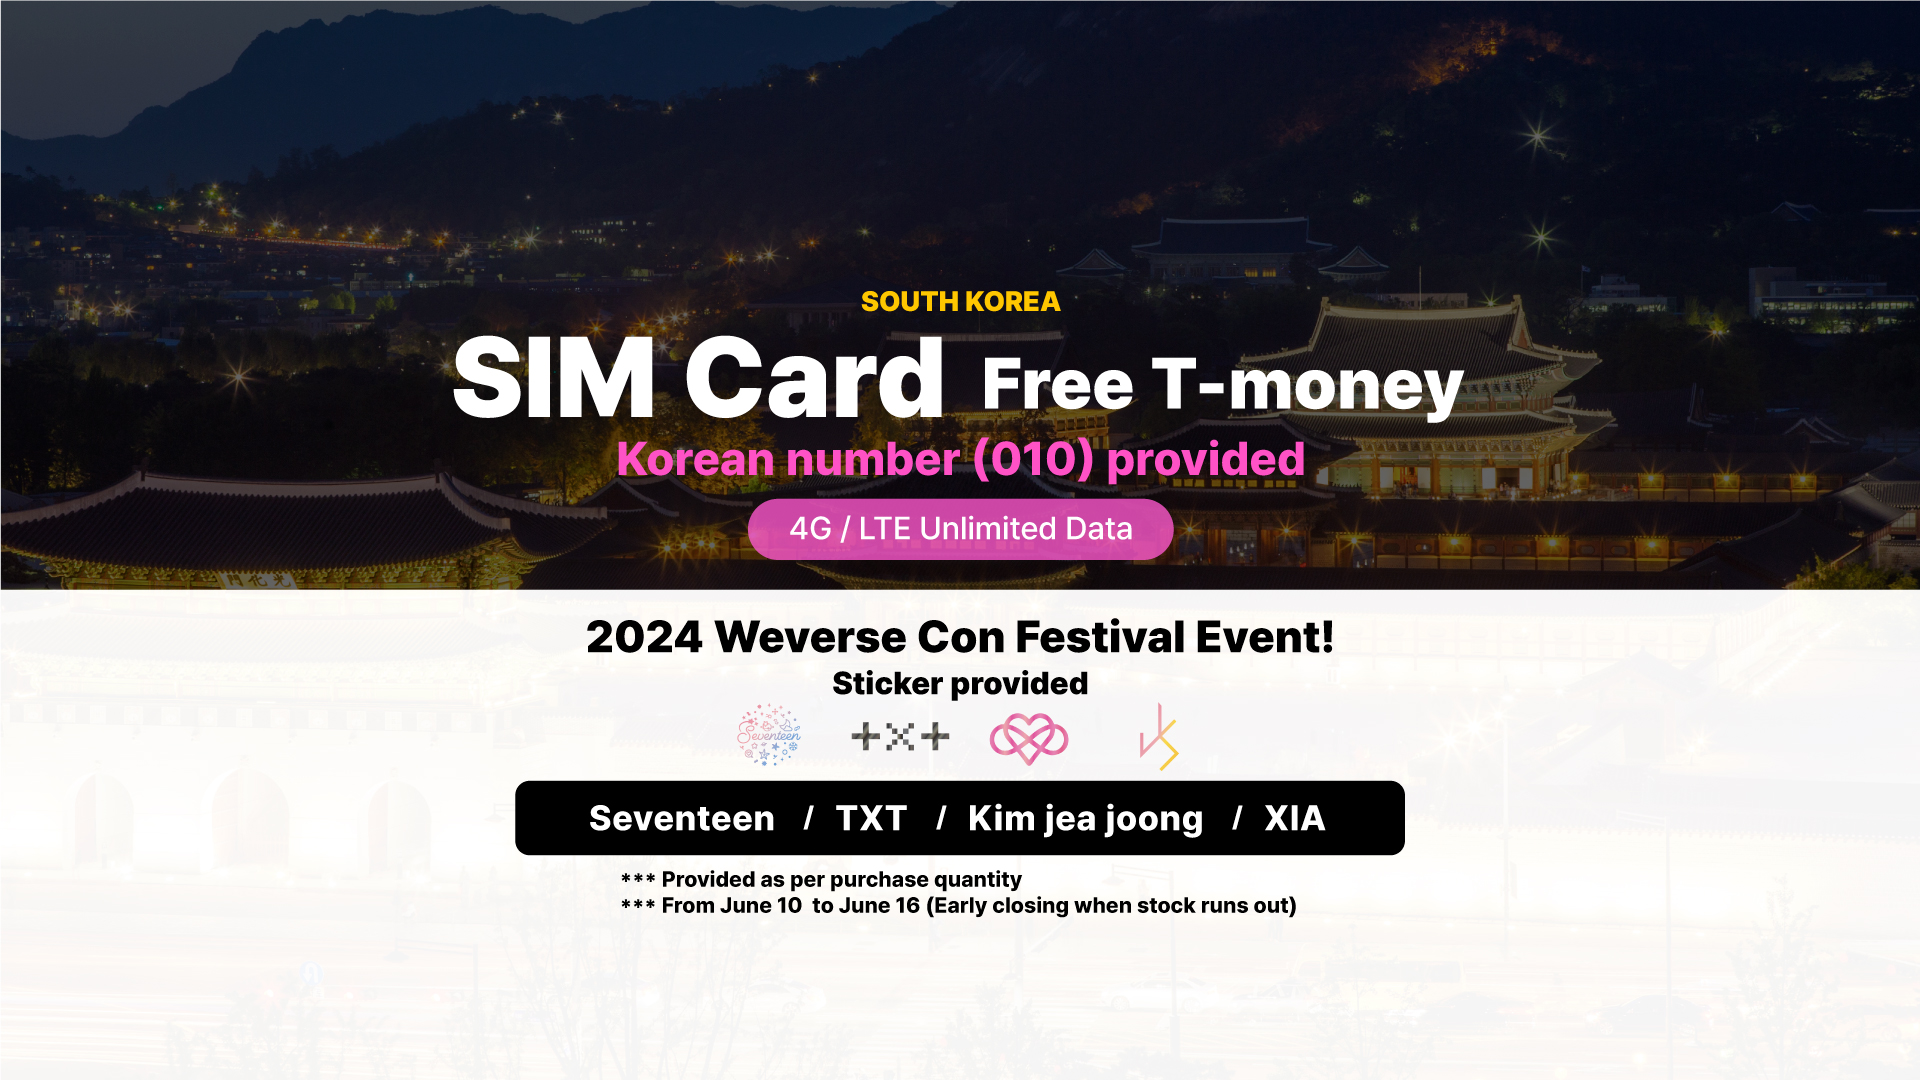 韓國無限流量上網卡 + T money交通卡 (LG U+)